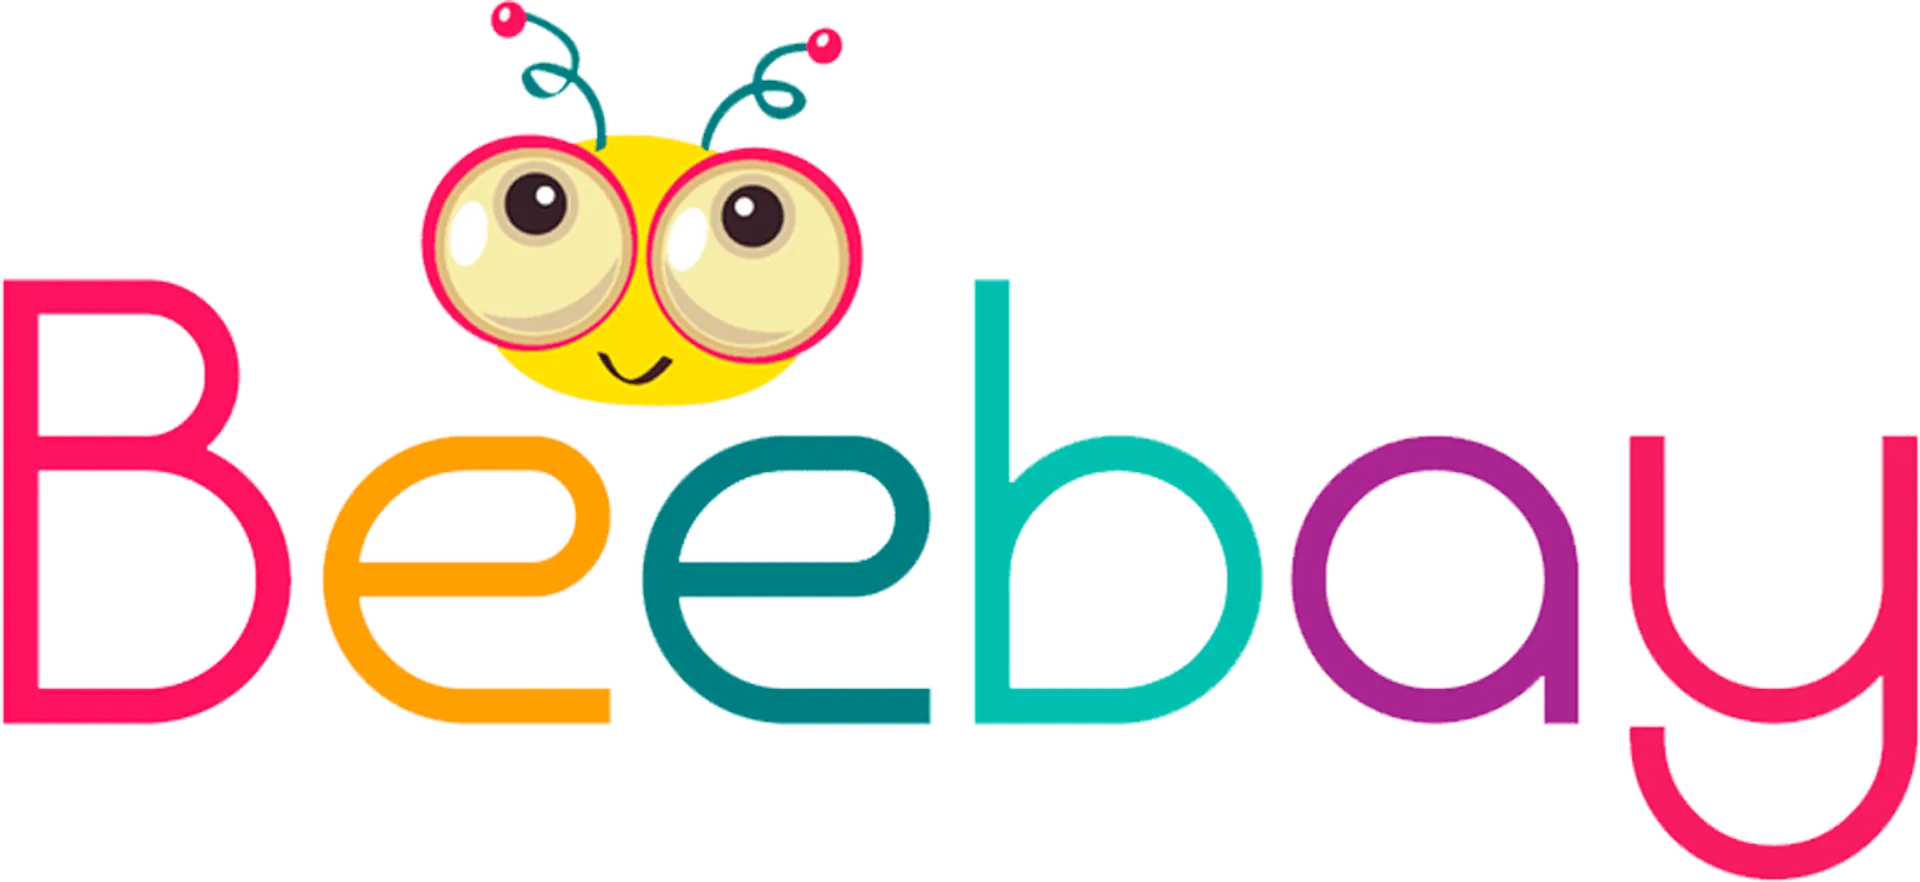 BEEBAY logo. Current weekly ad